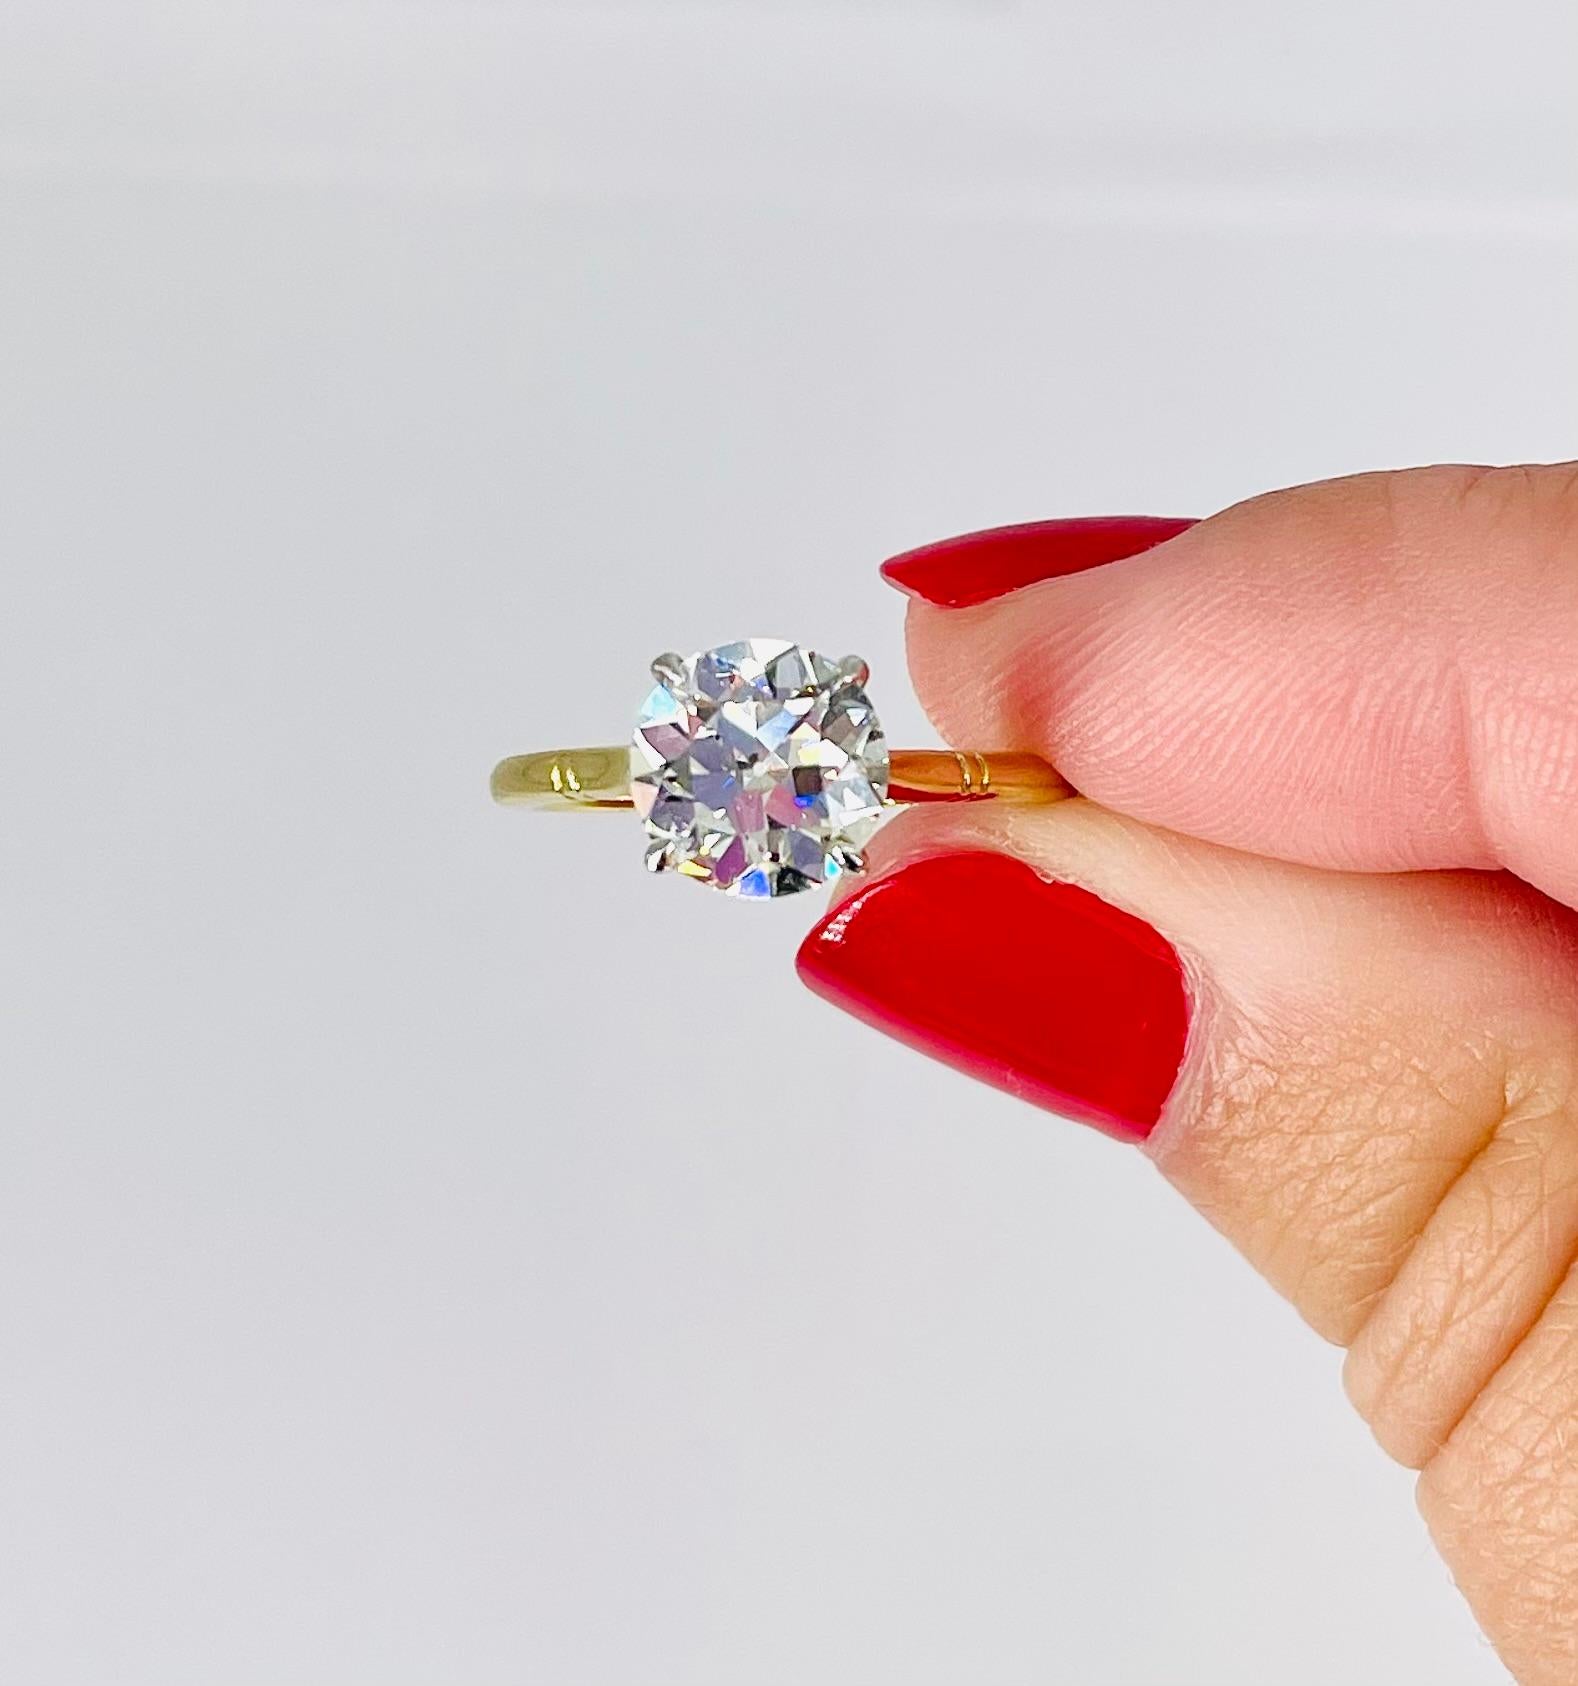 Cette magnifique bague de fiançailles solitaire est une pièce intemporelle et romantique. Le diamant antique de taille européenne de 1,79 carat est une trouvaille rare qui restera dans les mémoires pendant des années. Le diamant est certifié par le